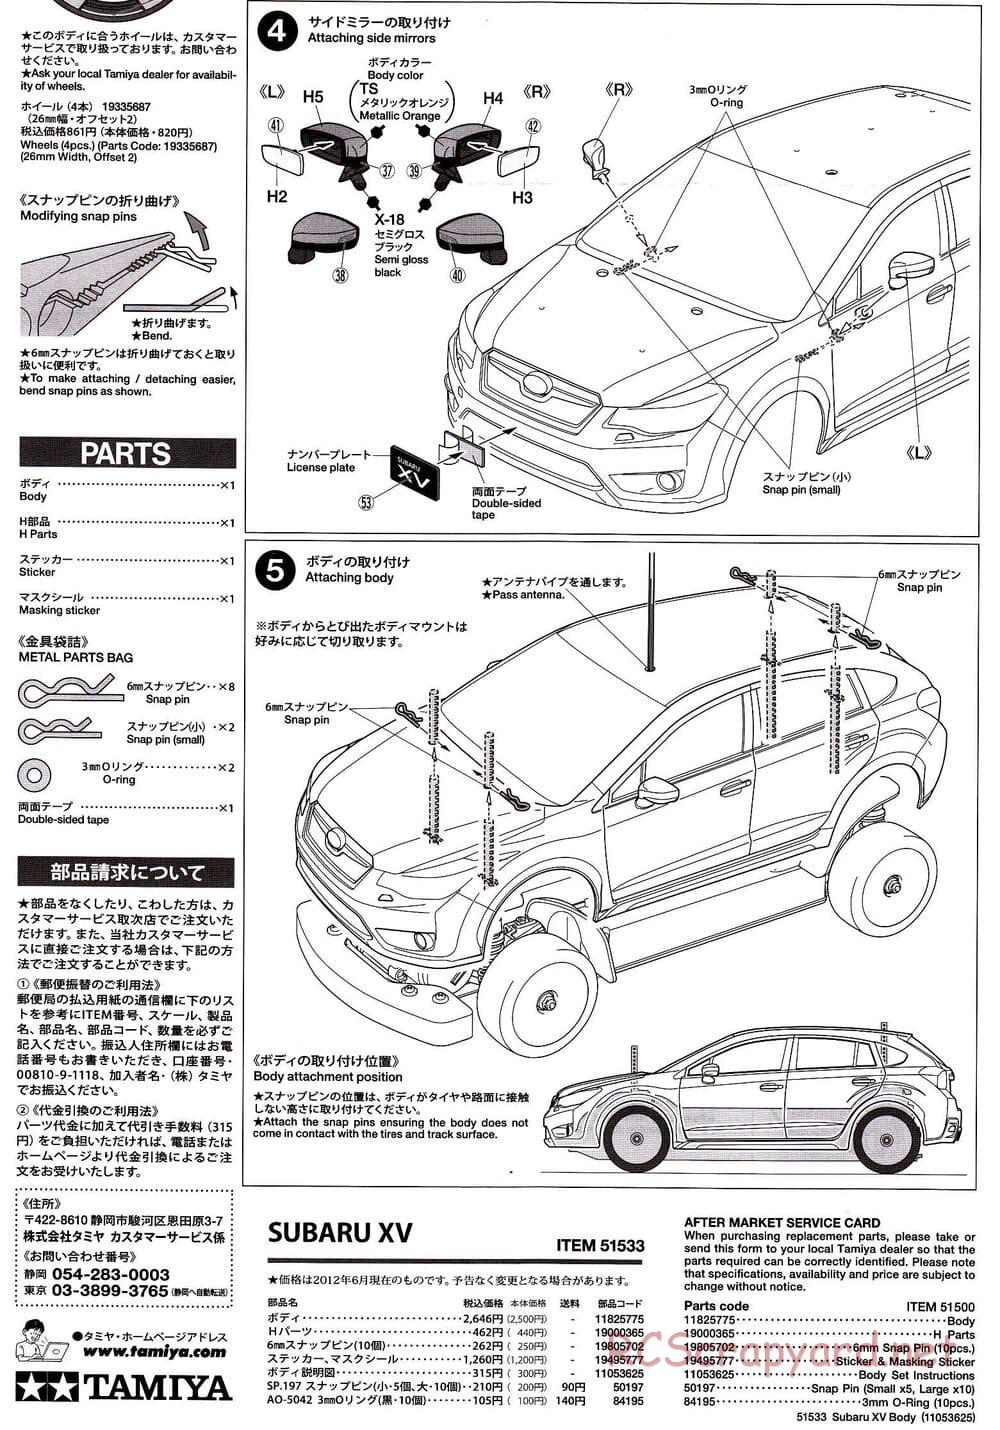 Tamiya - Subaru XV - XV-01 Chassis - Body Manual - Page 4